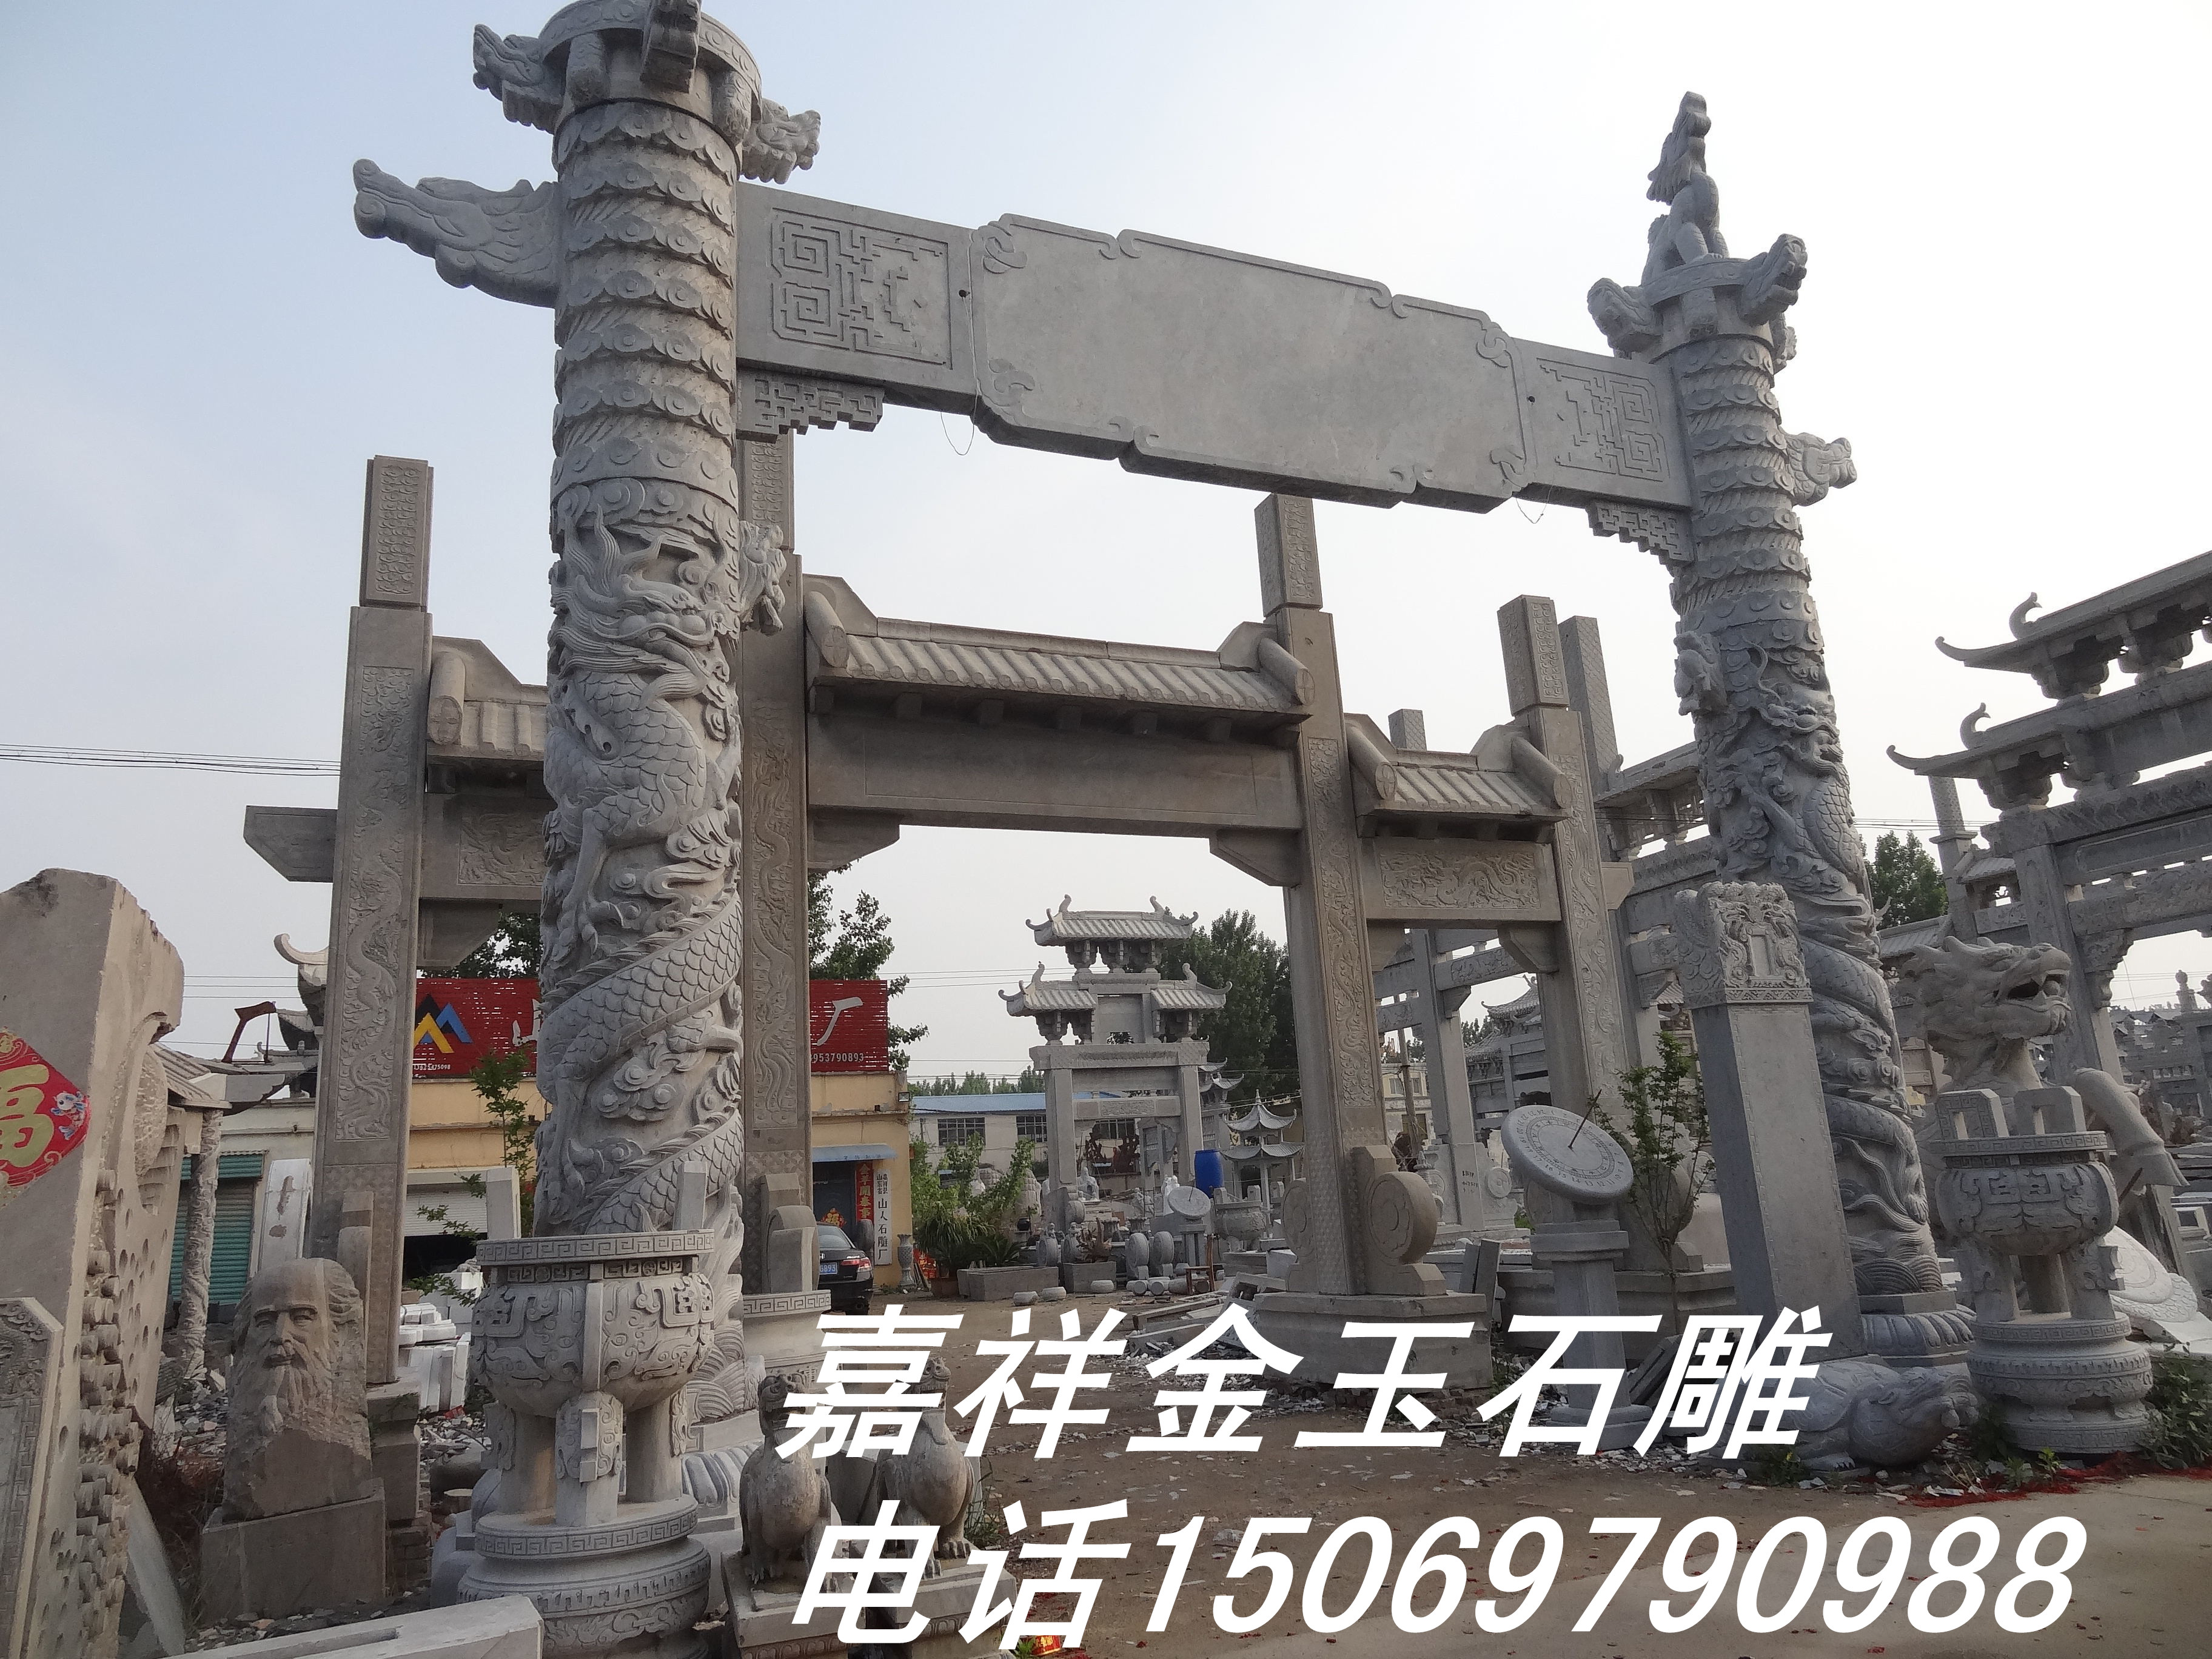 济宁市石雕牌楼山东哪家的厂家做的好厂家石雕牌楼山东哪家的厂家做的好就找金玉石雕